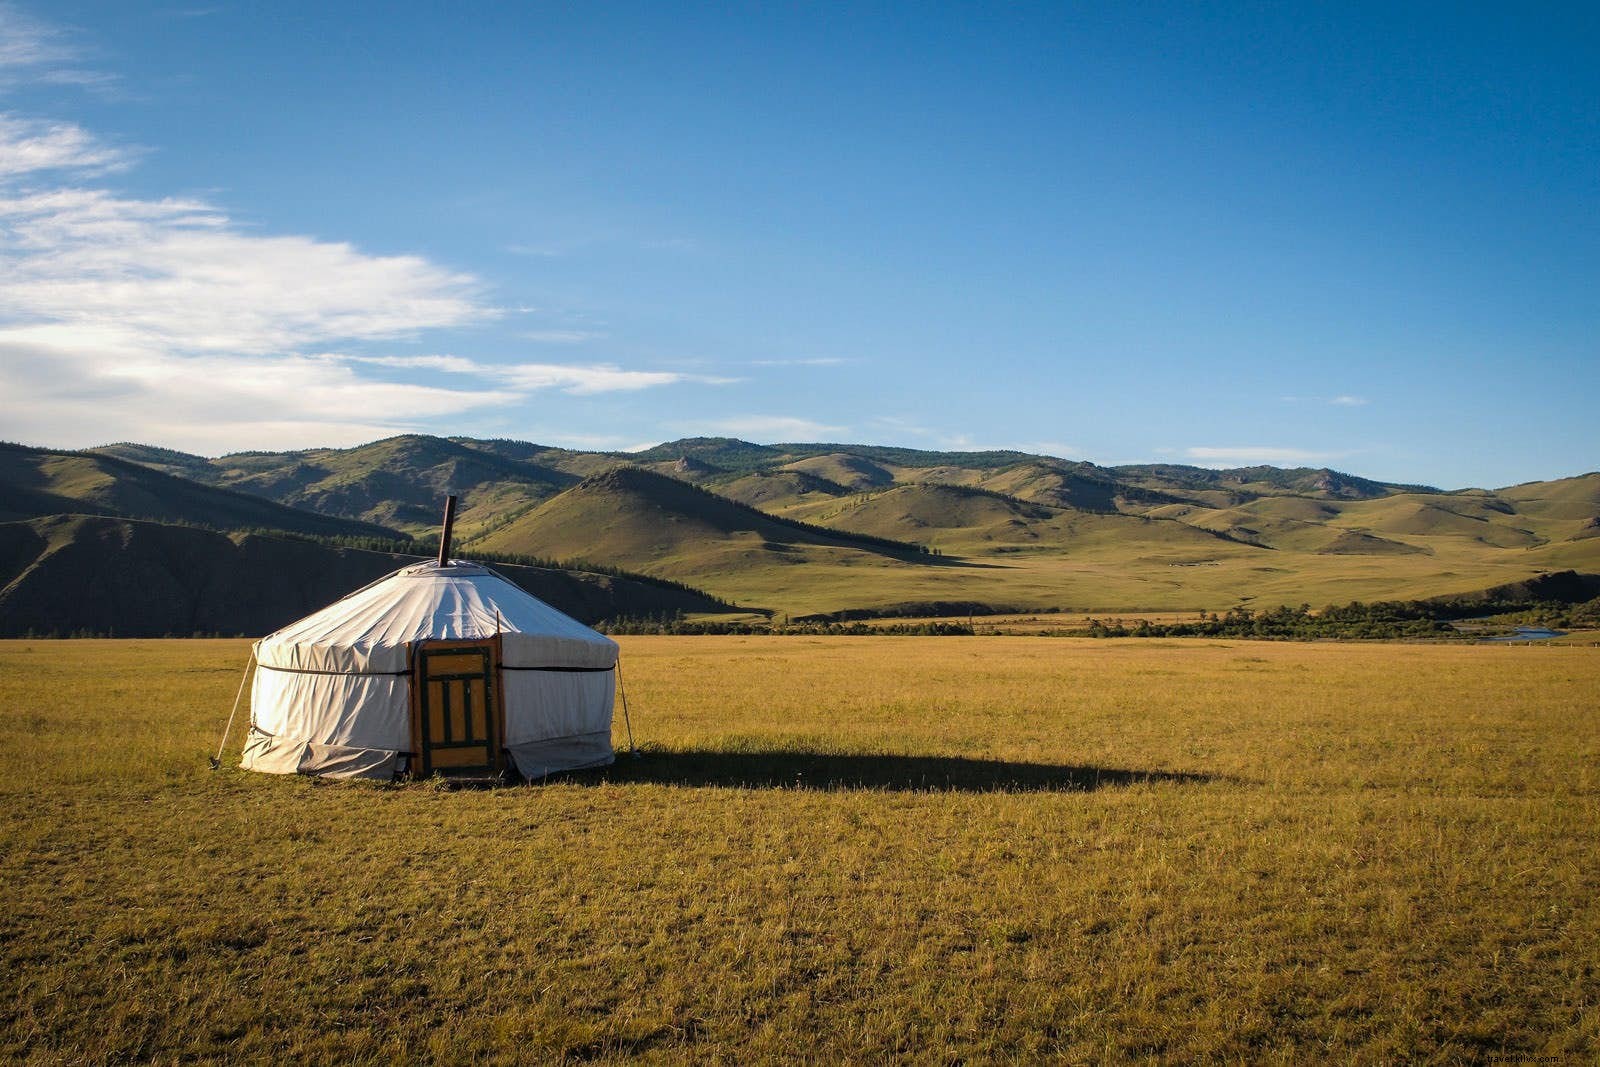 Tanah langit biru:10 alasan untuk mengunjungi Mongolia sekarang 